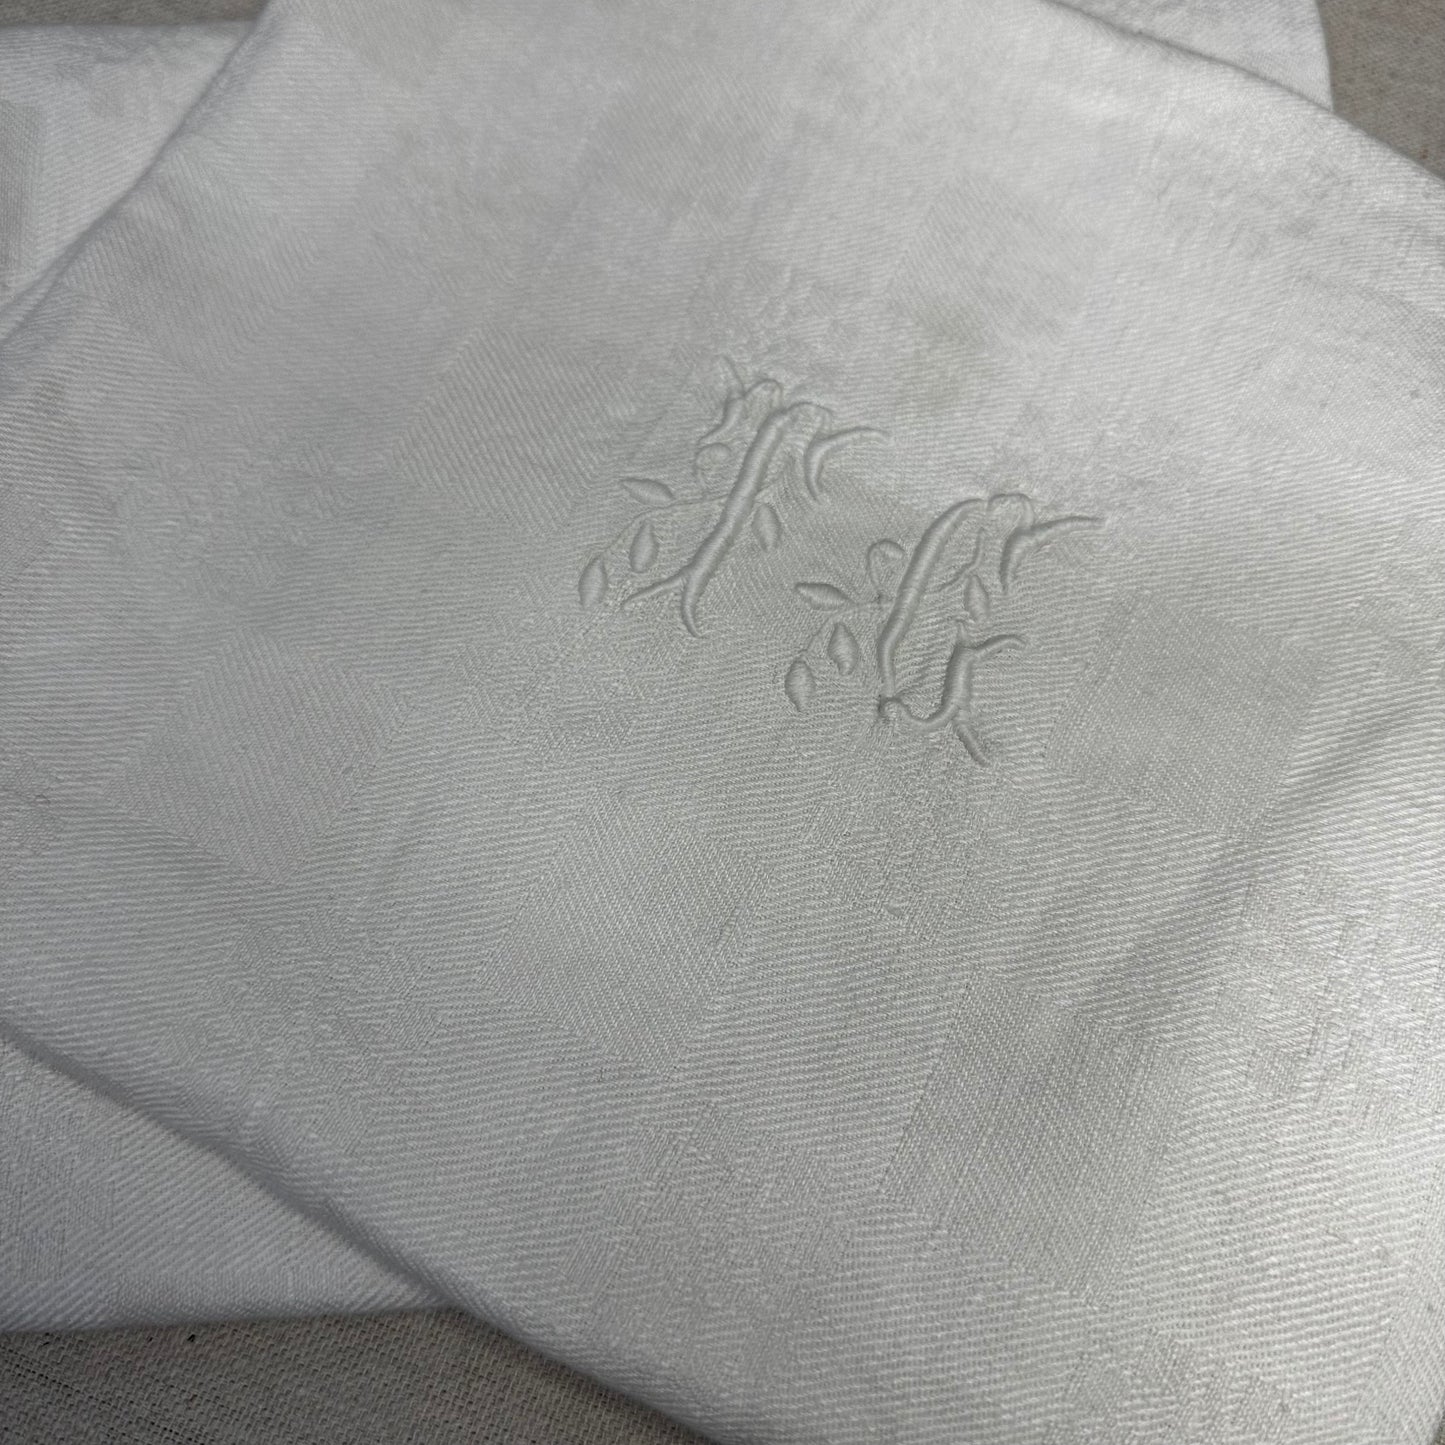 Pair of Vintage Linen Napkins White on White Check TC TG Monogram